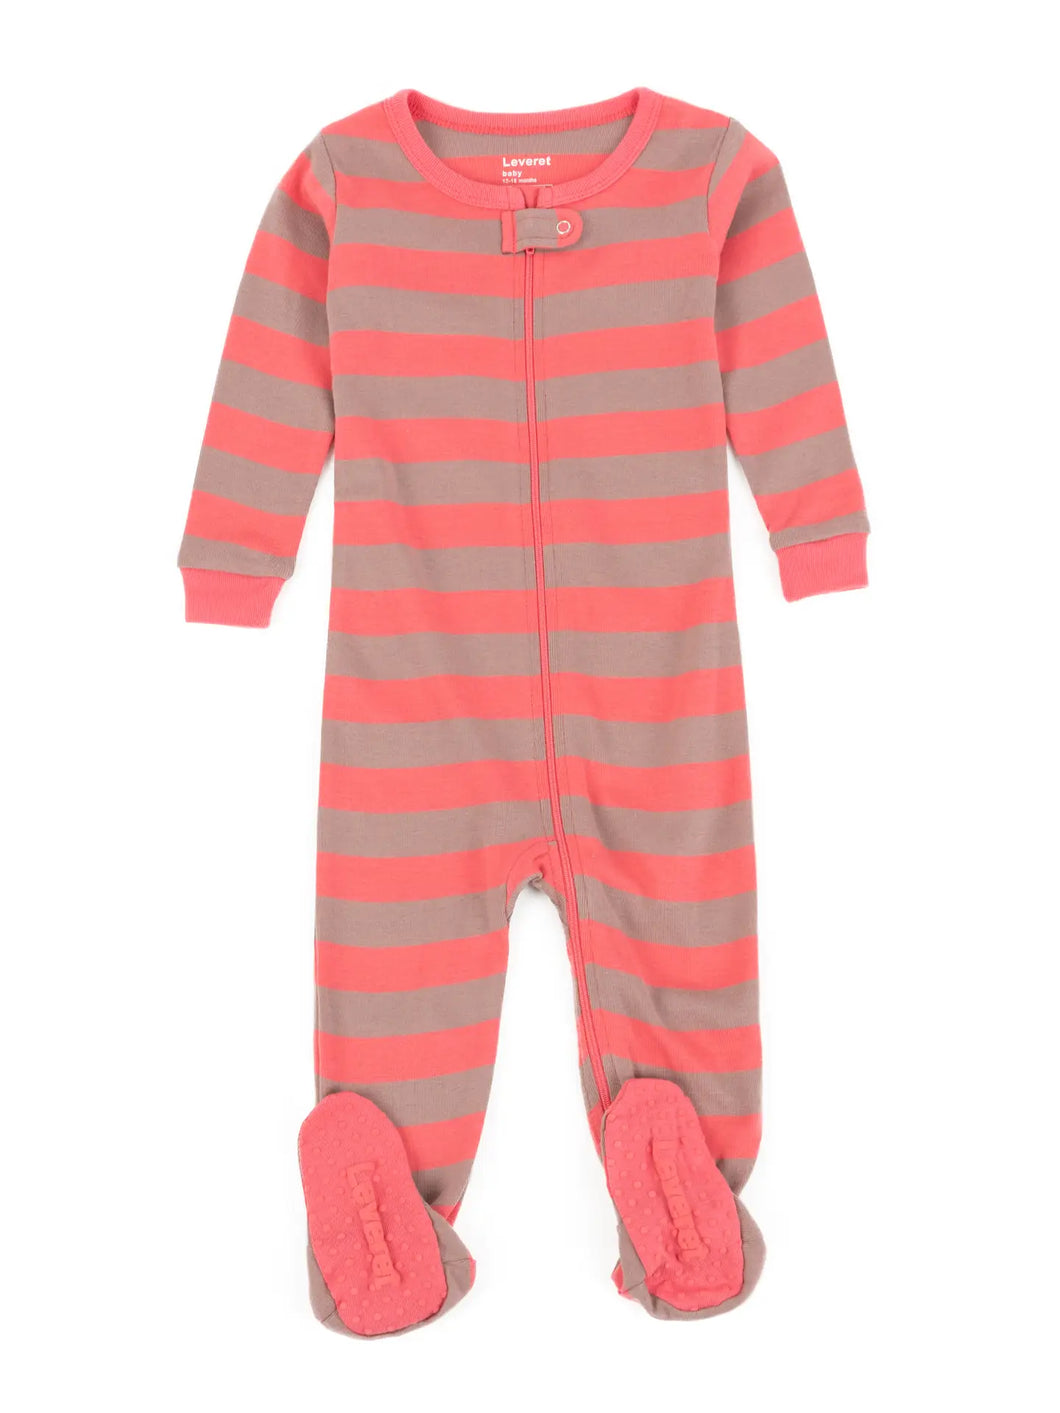 Rose and antler stripe pajamas